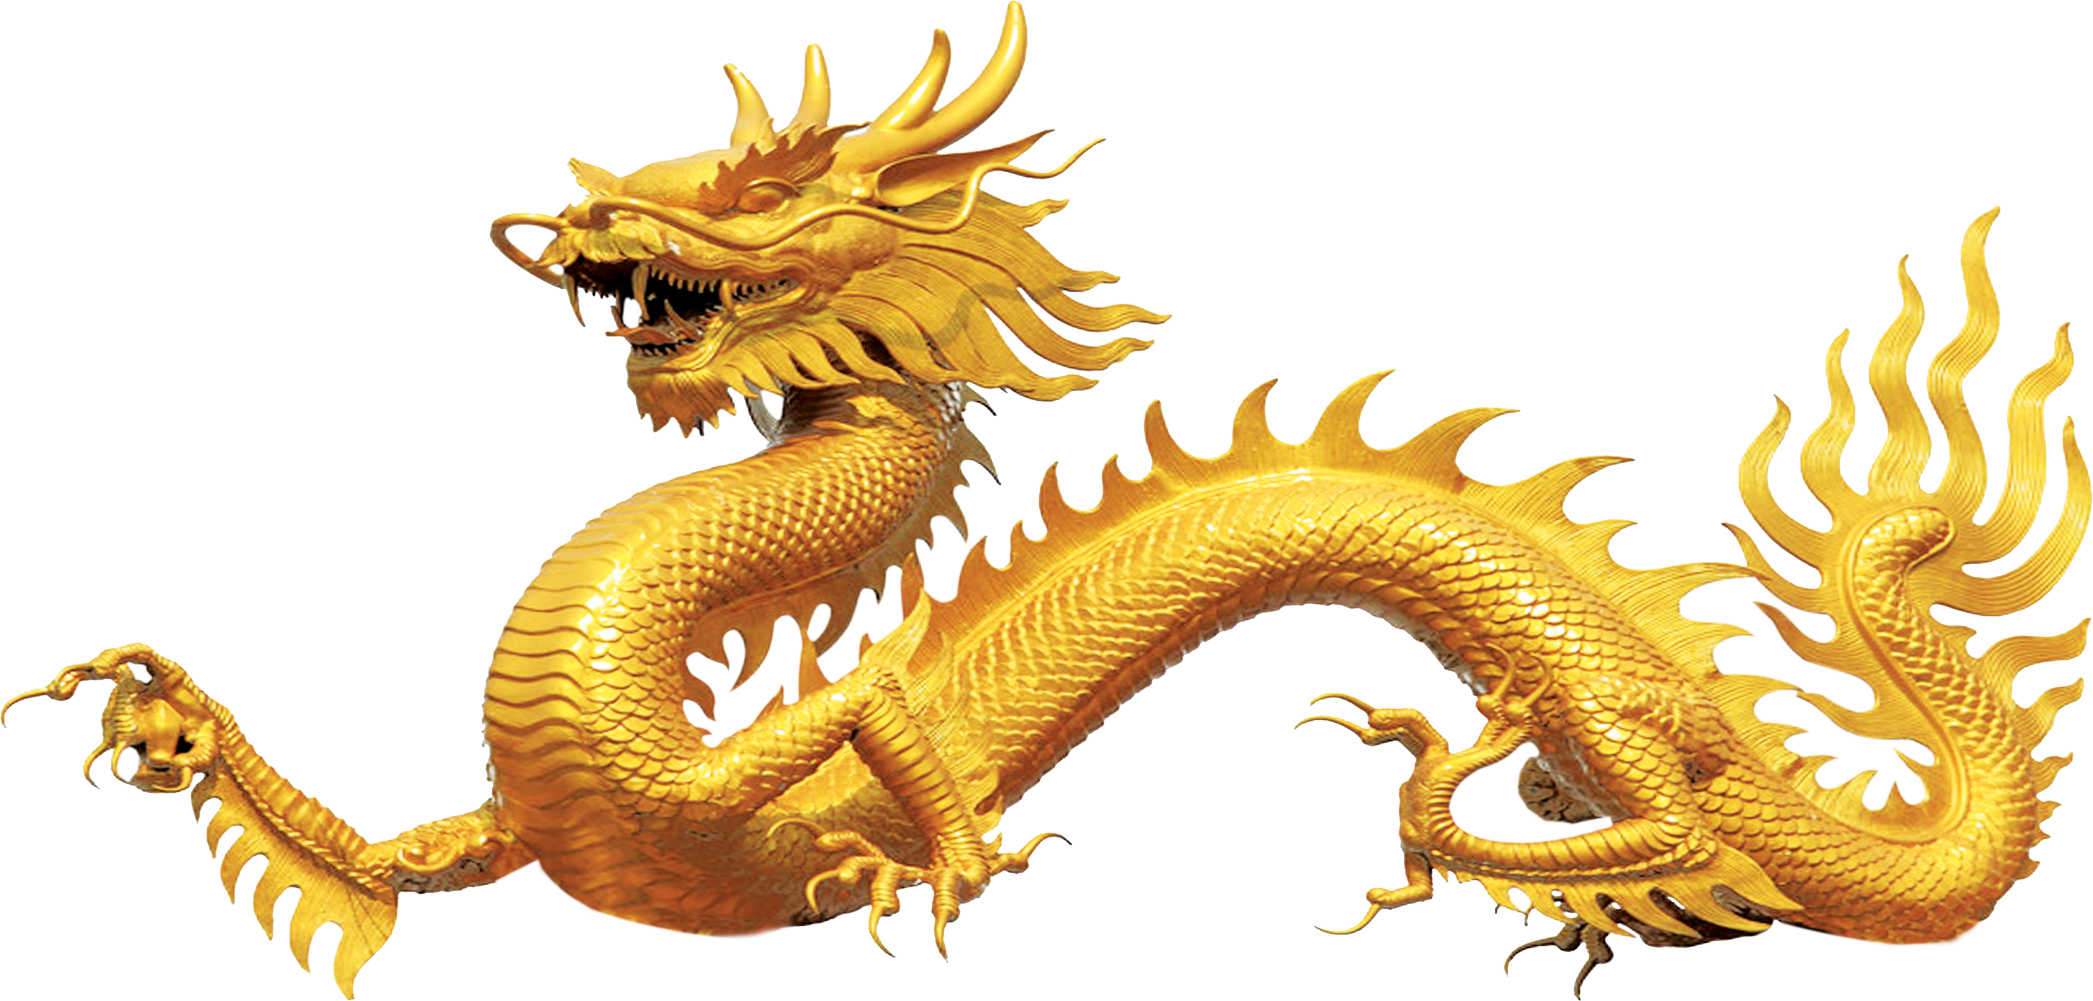 Включи золотой дракон. Статуя золотого дракона Китай. Голден дракон золотой дракон. Желтый дракон, цилинь. Китайский дракон Биань.